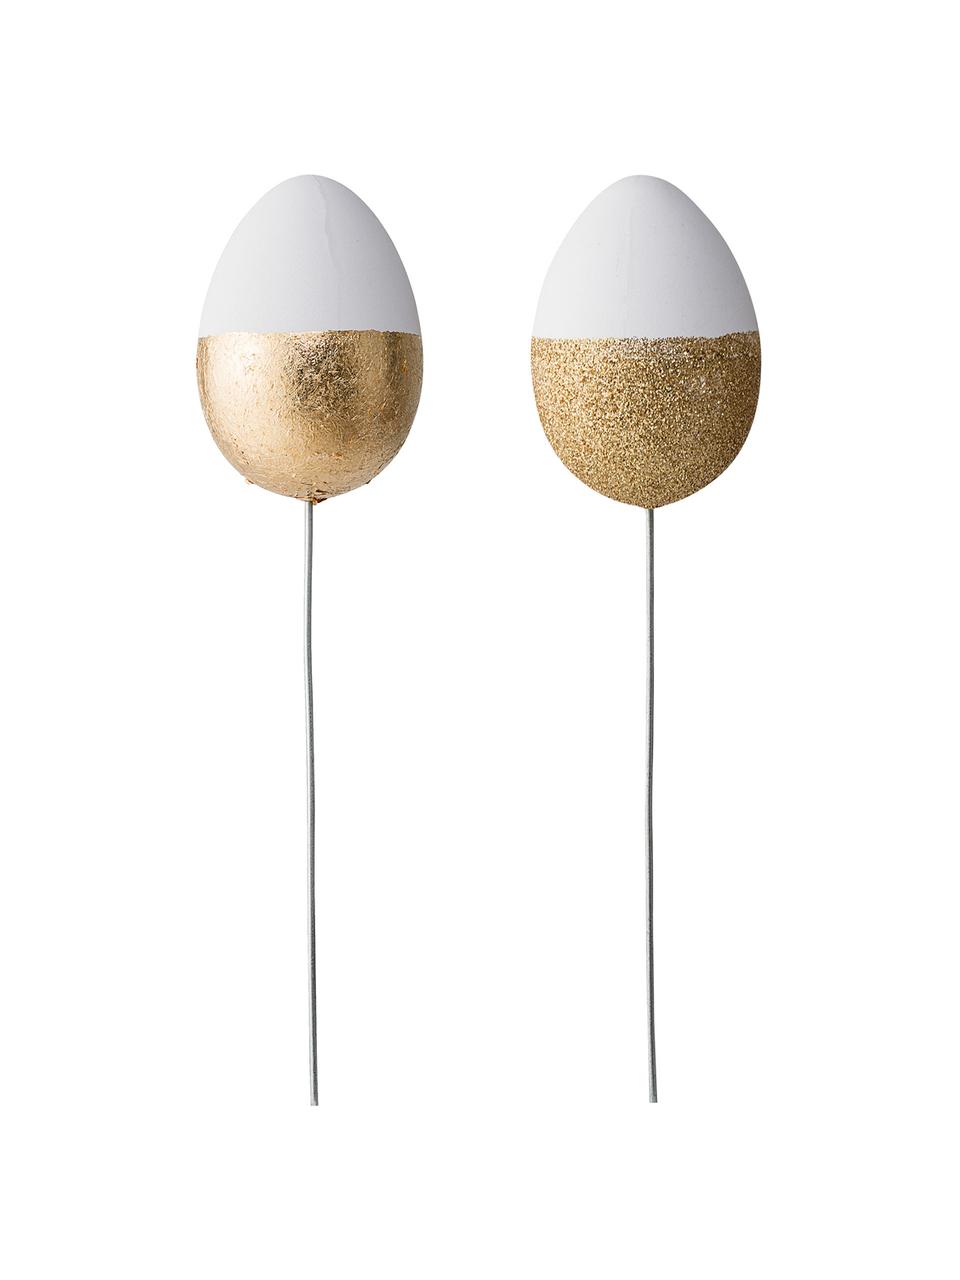 Ensemble d'œufs décoratifs Glitter, 2 élém., Blanc, couleur dorée